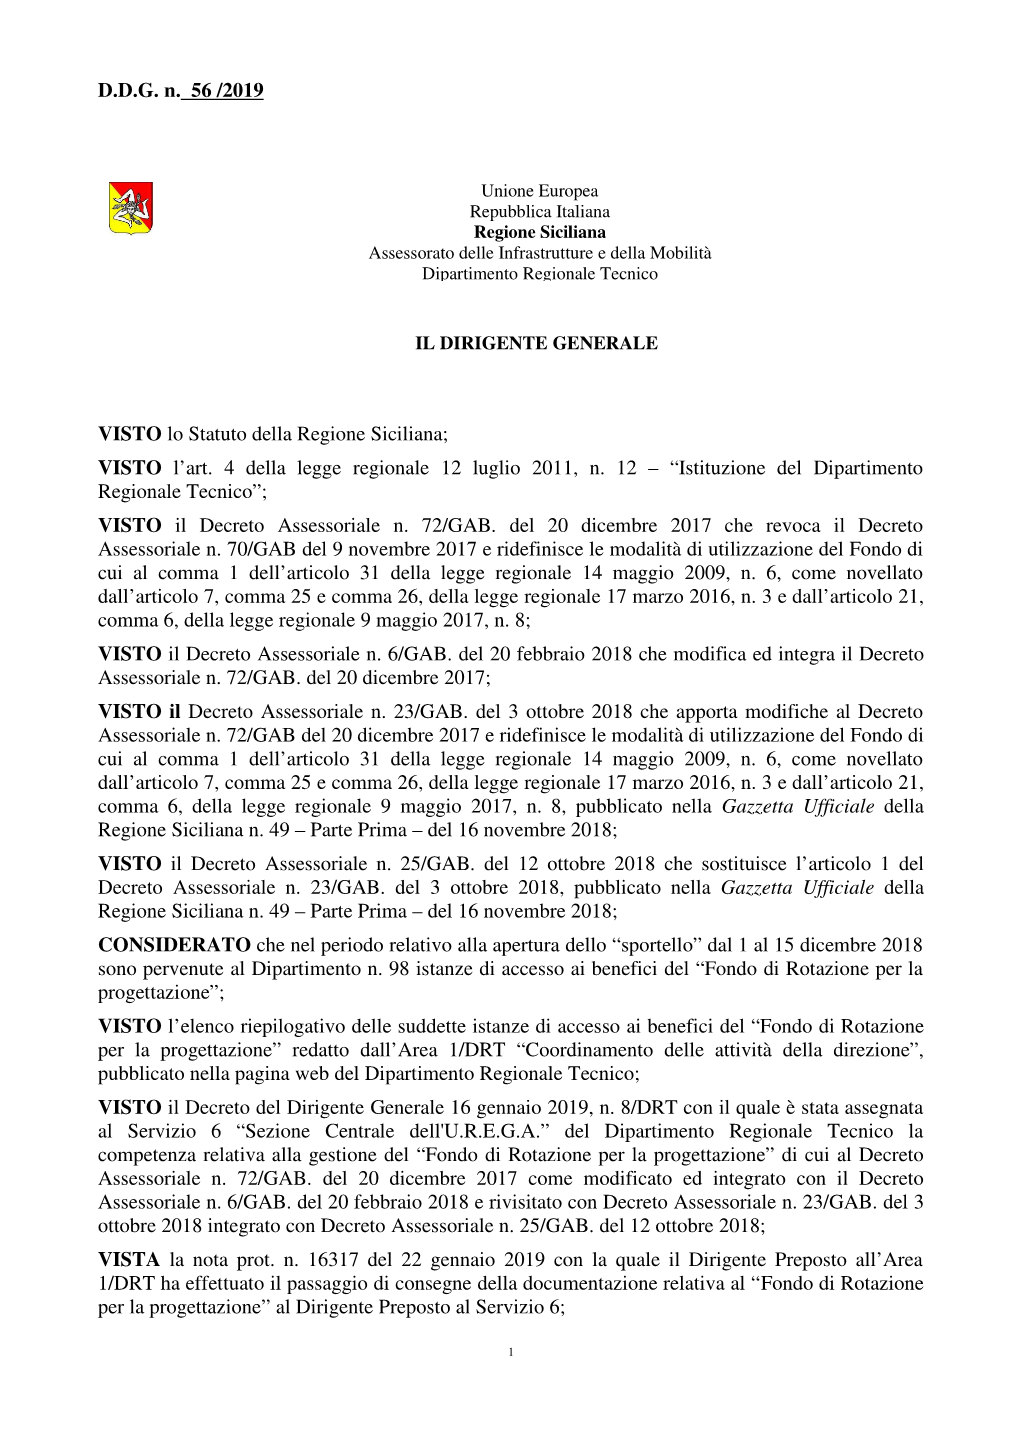 D.D.G. N. 56 /2019 VISTO Lo Statuto Della Regione Siciliana; VISTO L'art